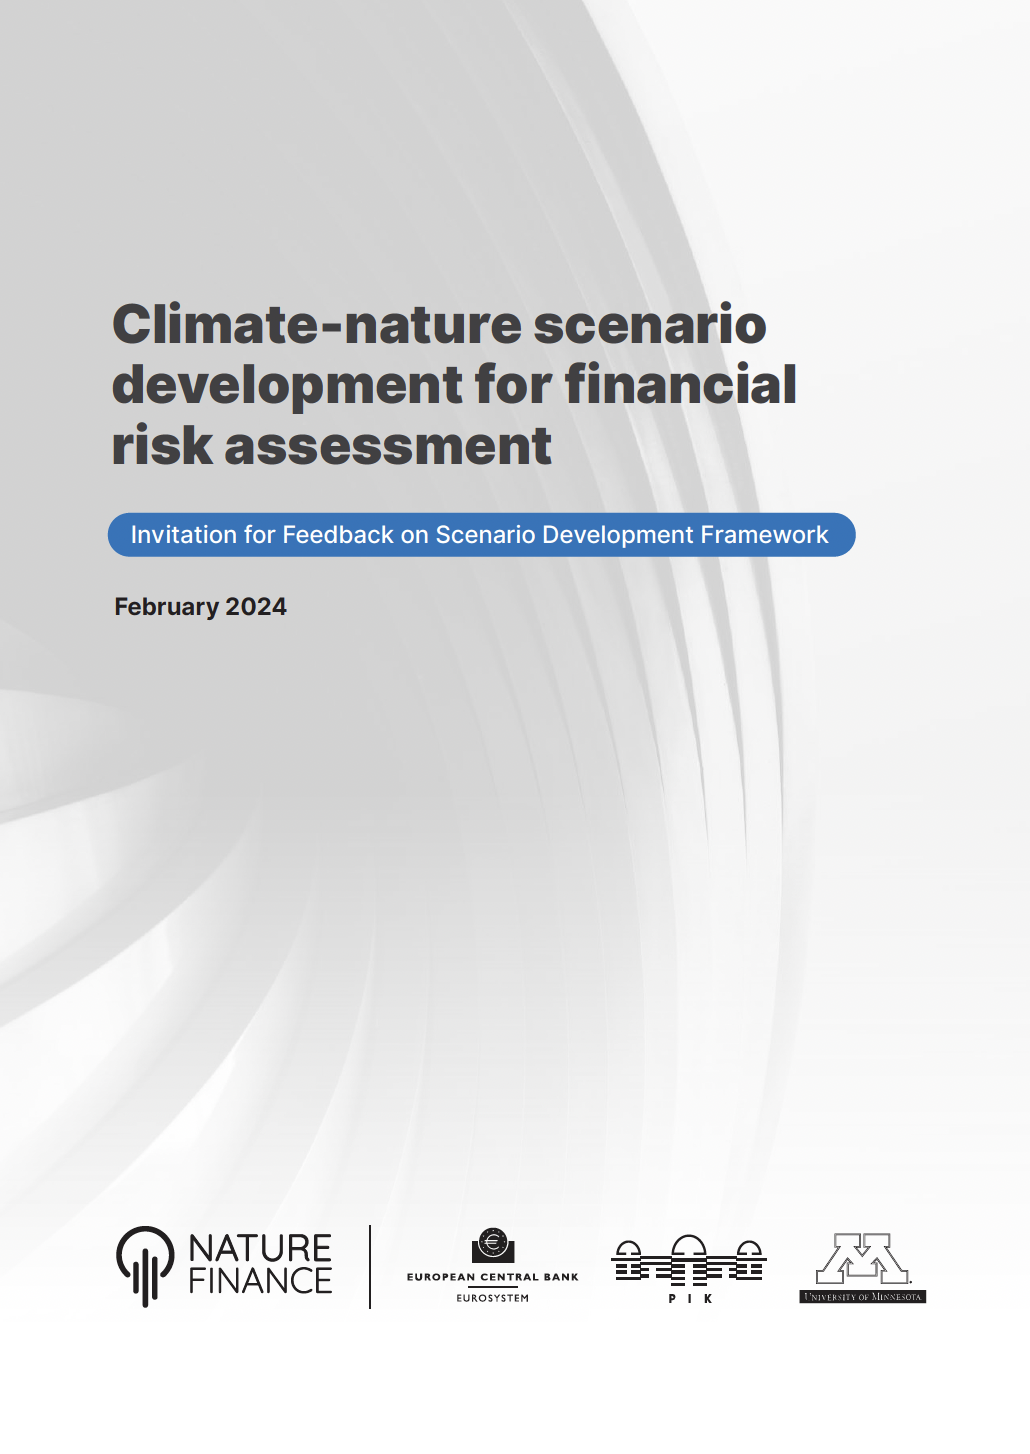 تطوير سيناريو الطبيعة المناخية لتقييم المخاطر المالية: دعوة لتقديم تعليقات حول إطار تطوير السيناريو  